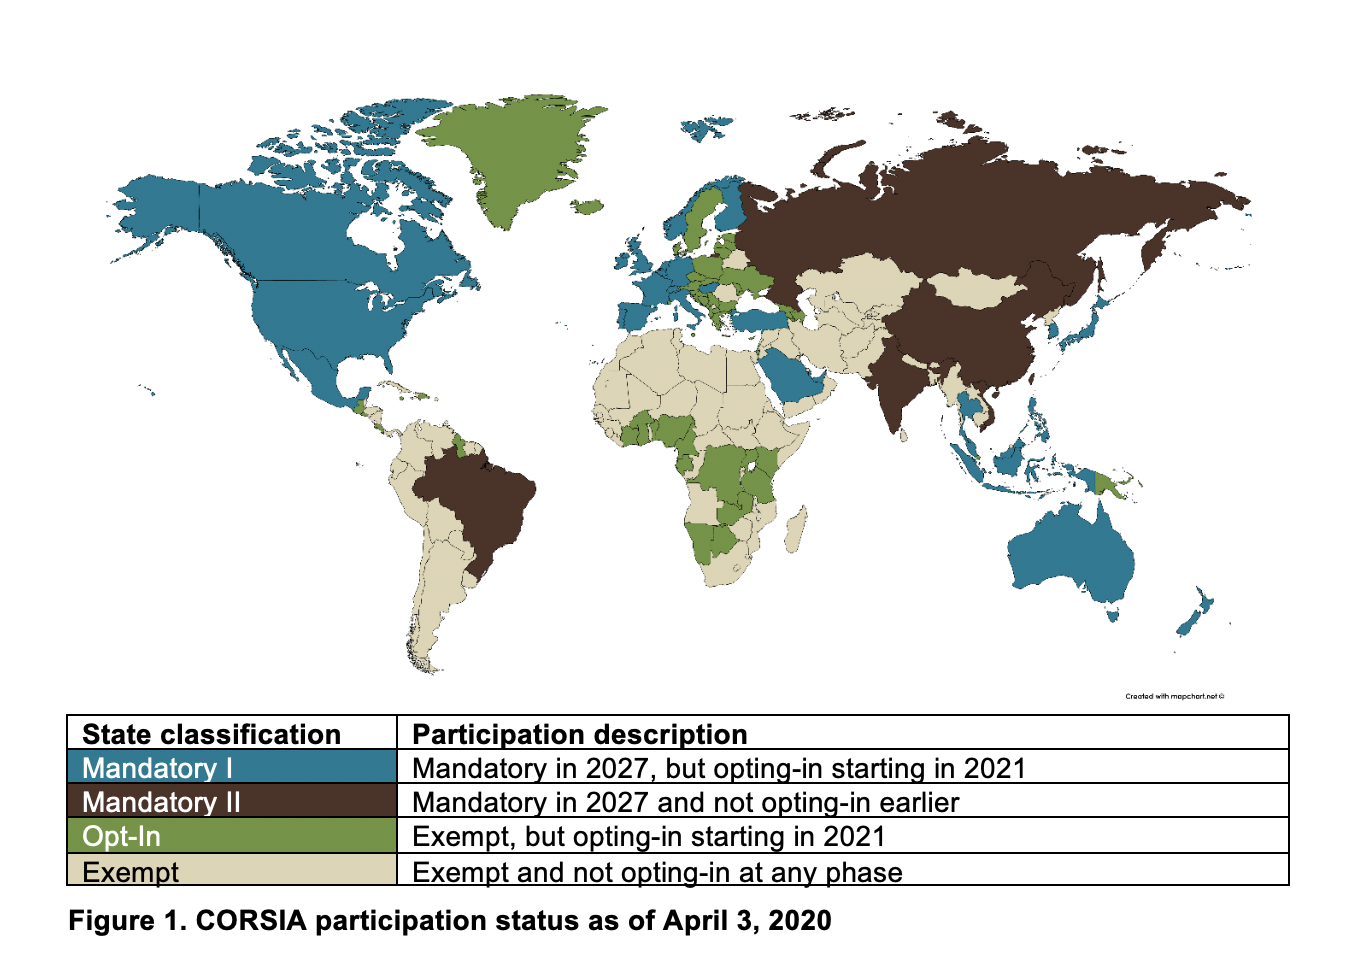 Figure 1. CORSIA participation status as of April 3, 2020